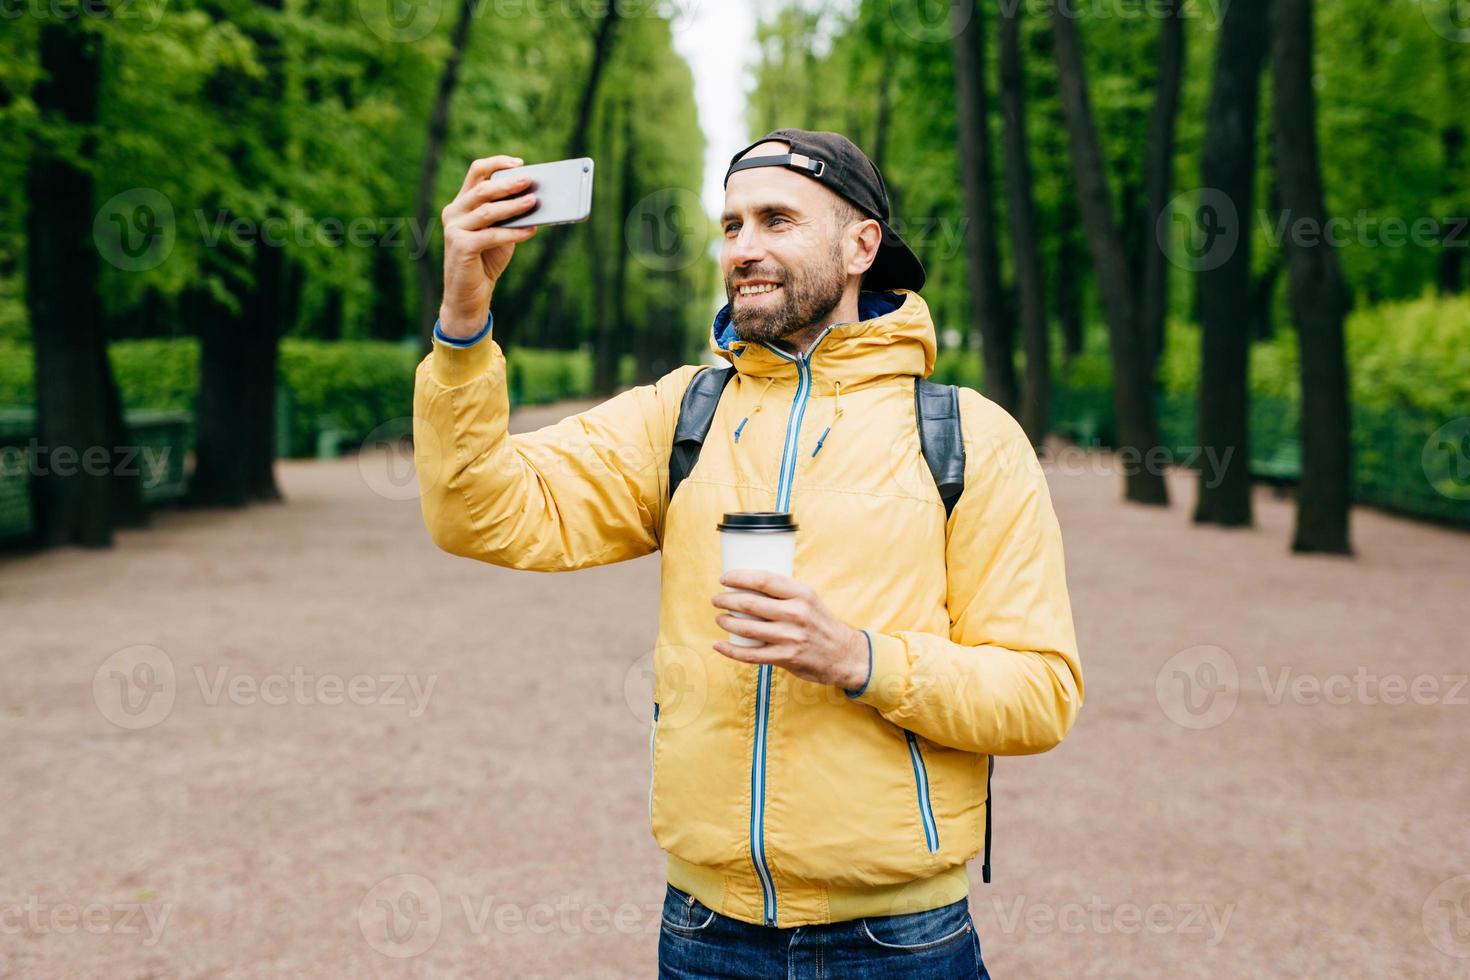 retrato ao ar livre de homem elegante com barba por fazer usando anoraque amarelo e segurando mochila e café para viagem fazendo selfie com seu telefone celular em pé no belo parque verde com sorriso foto